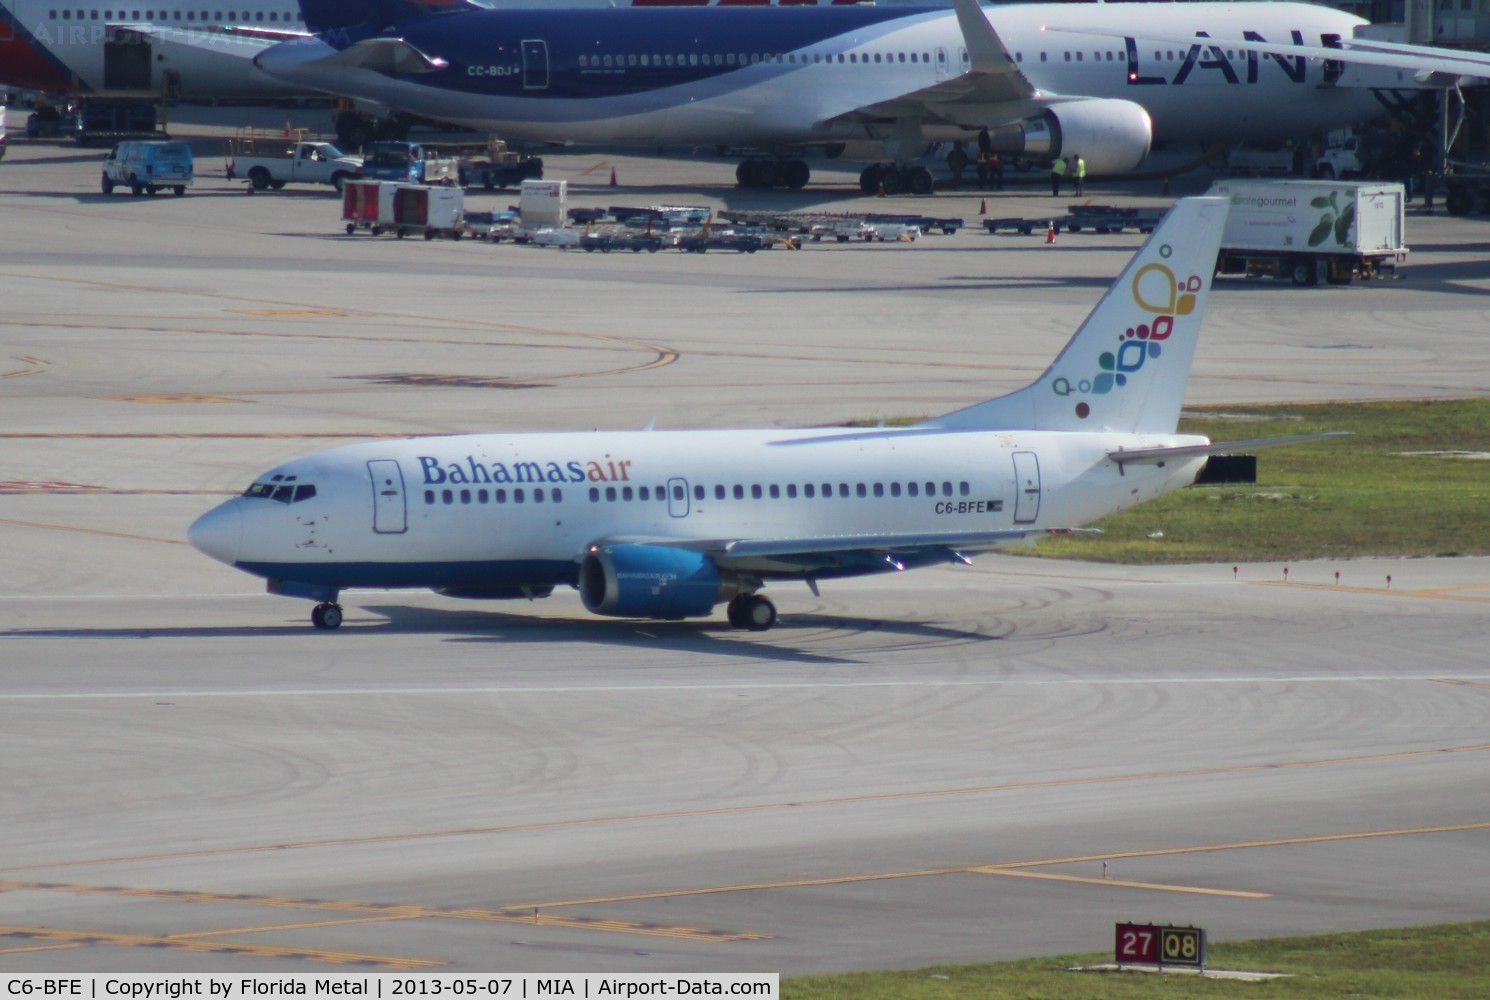 C6-BFE, 1993 Boeing 737-5H6 C/N 26450, Bahamas Air